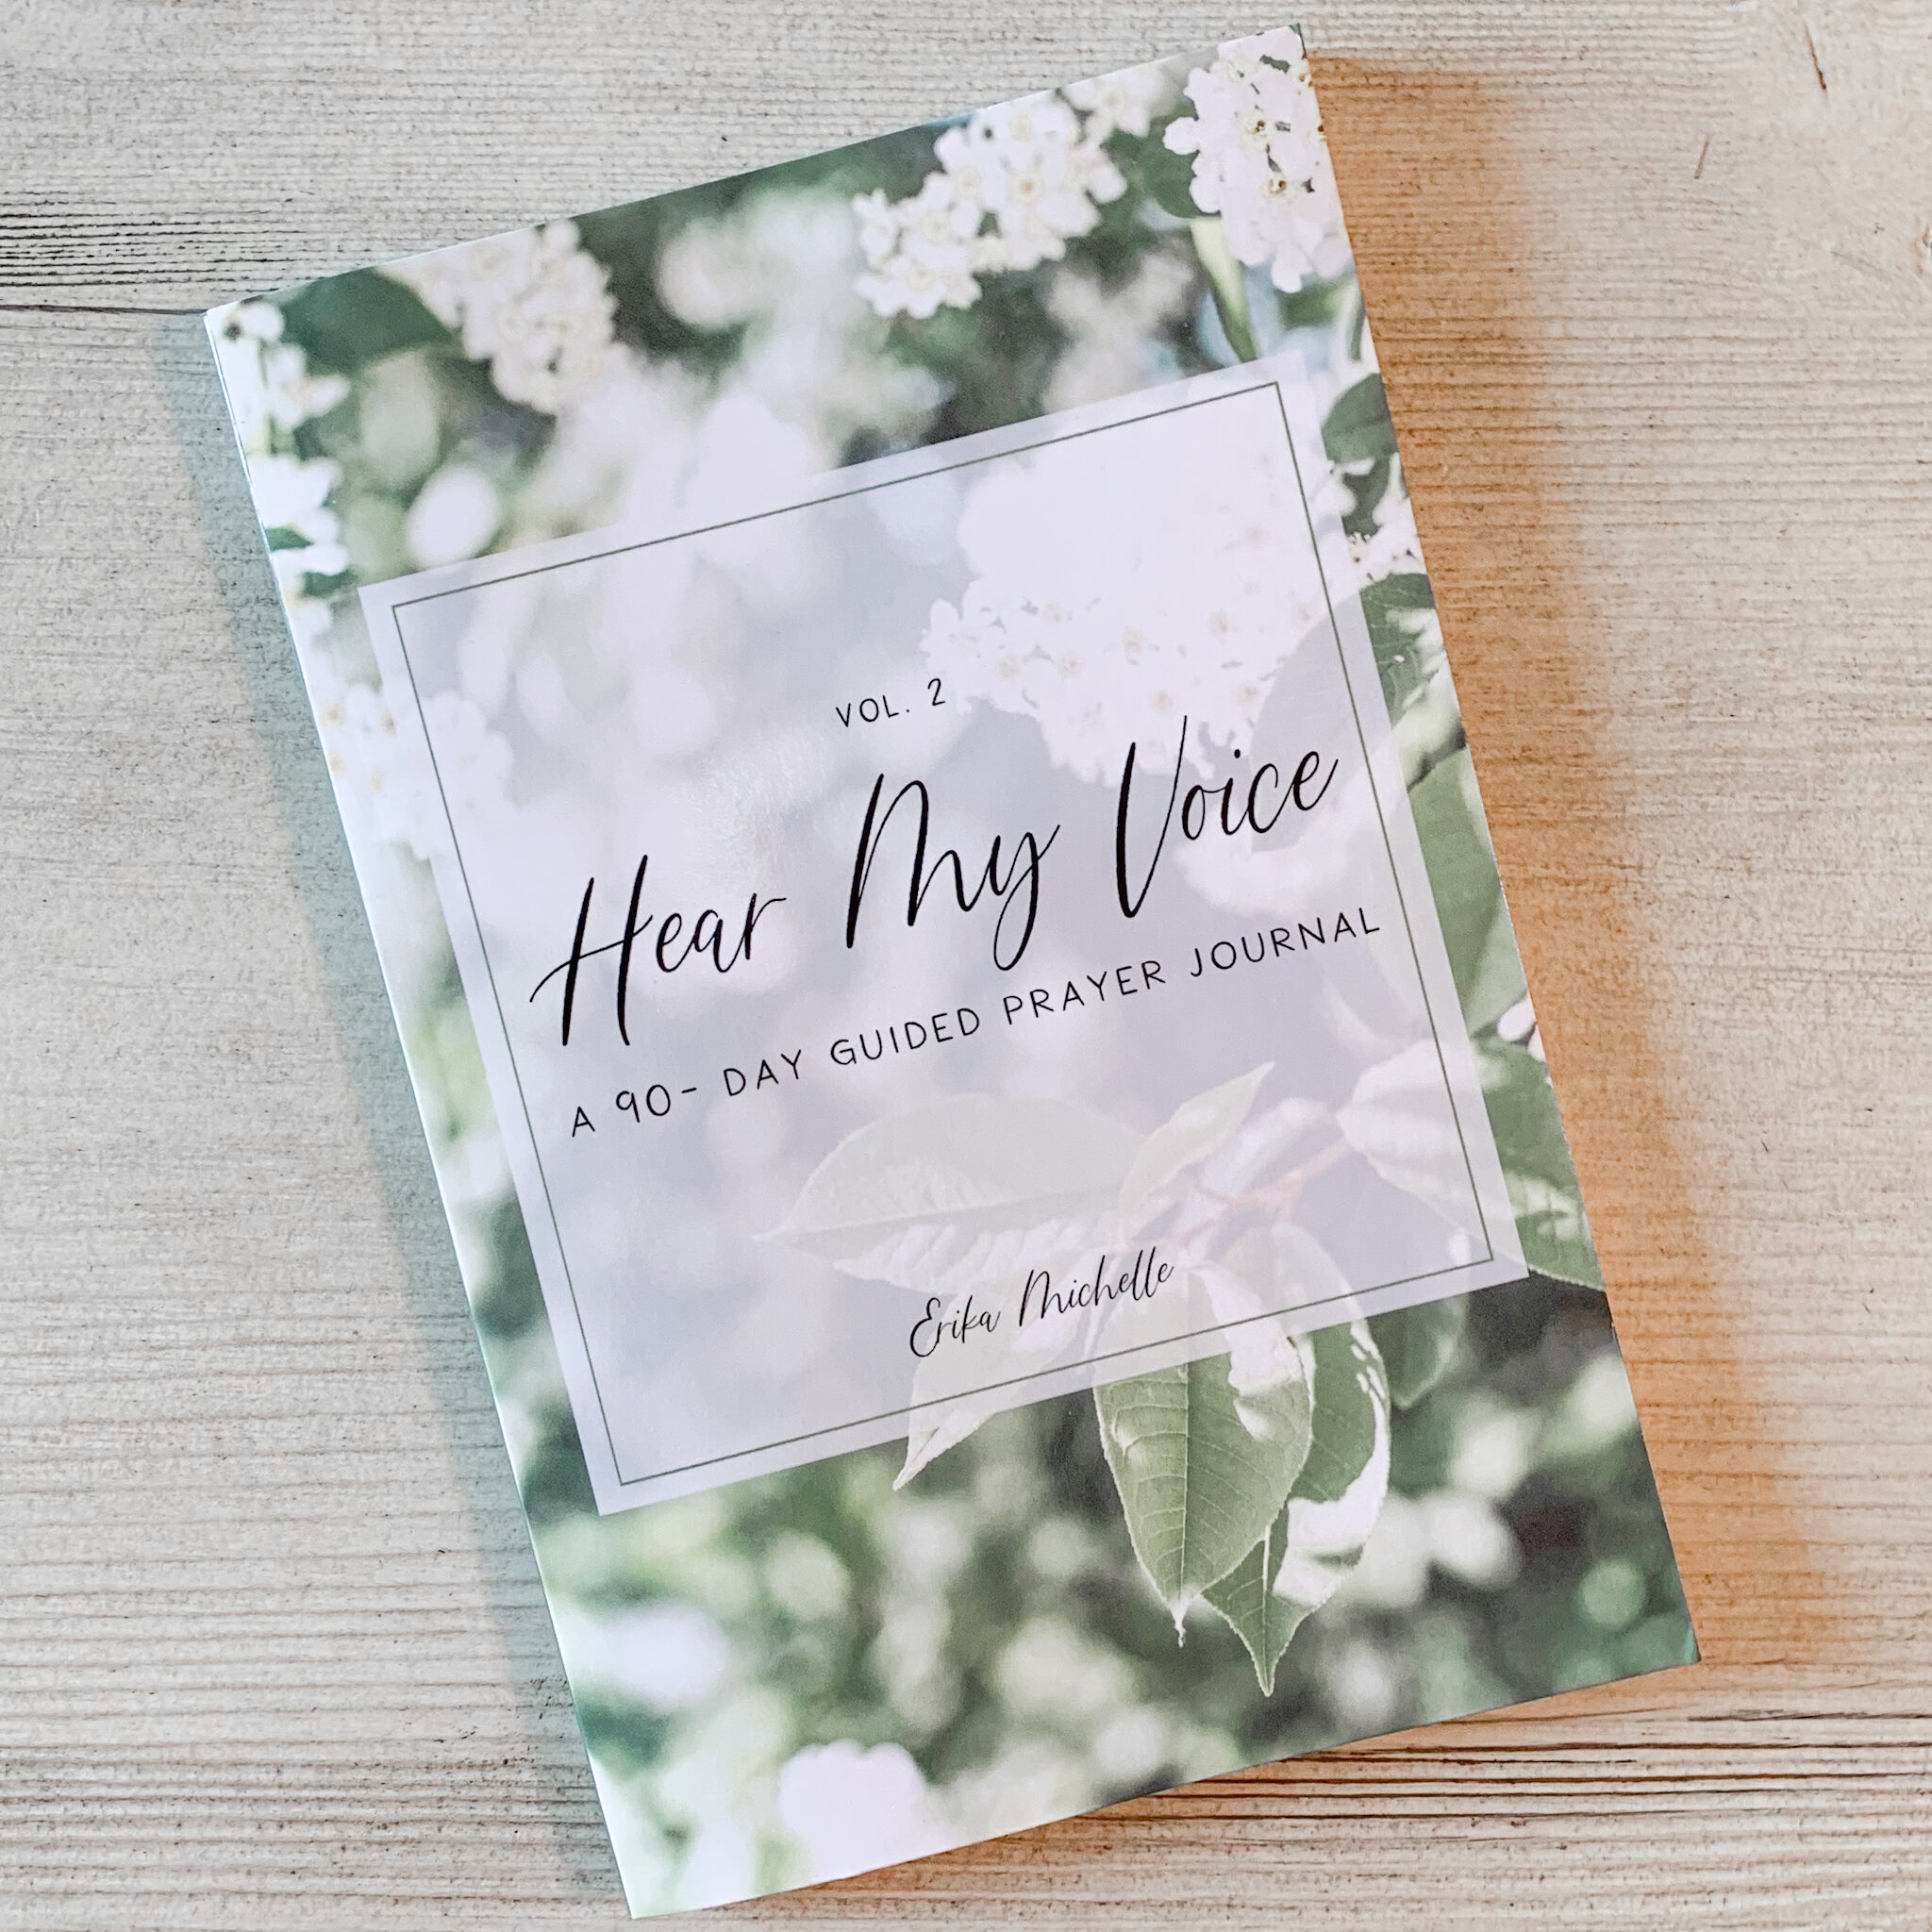 Hear My Voice Prayer Journal